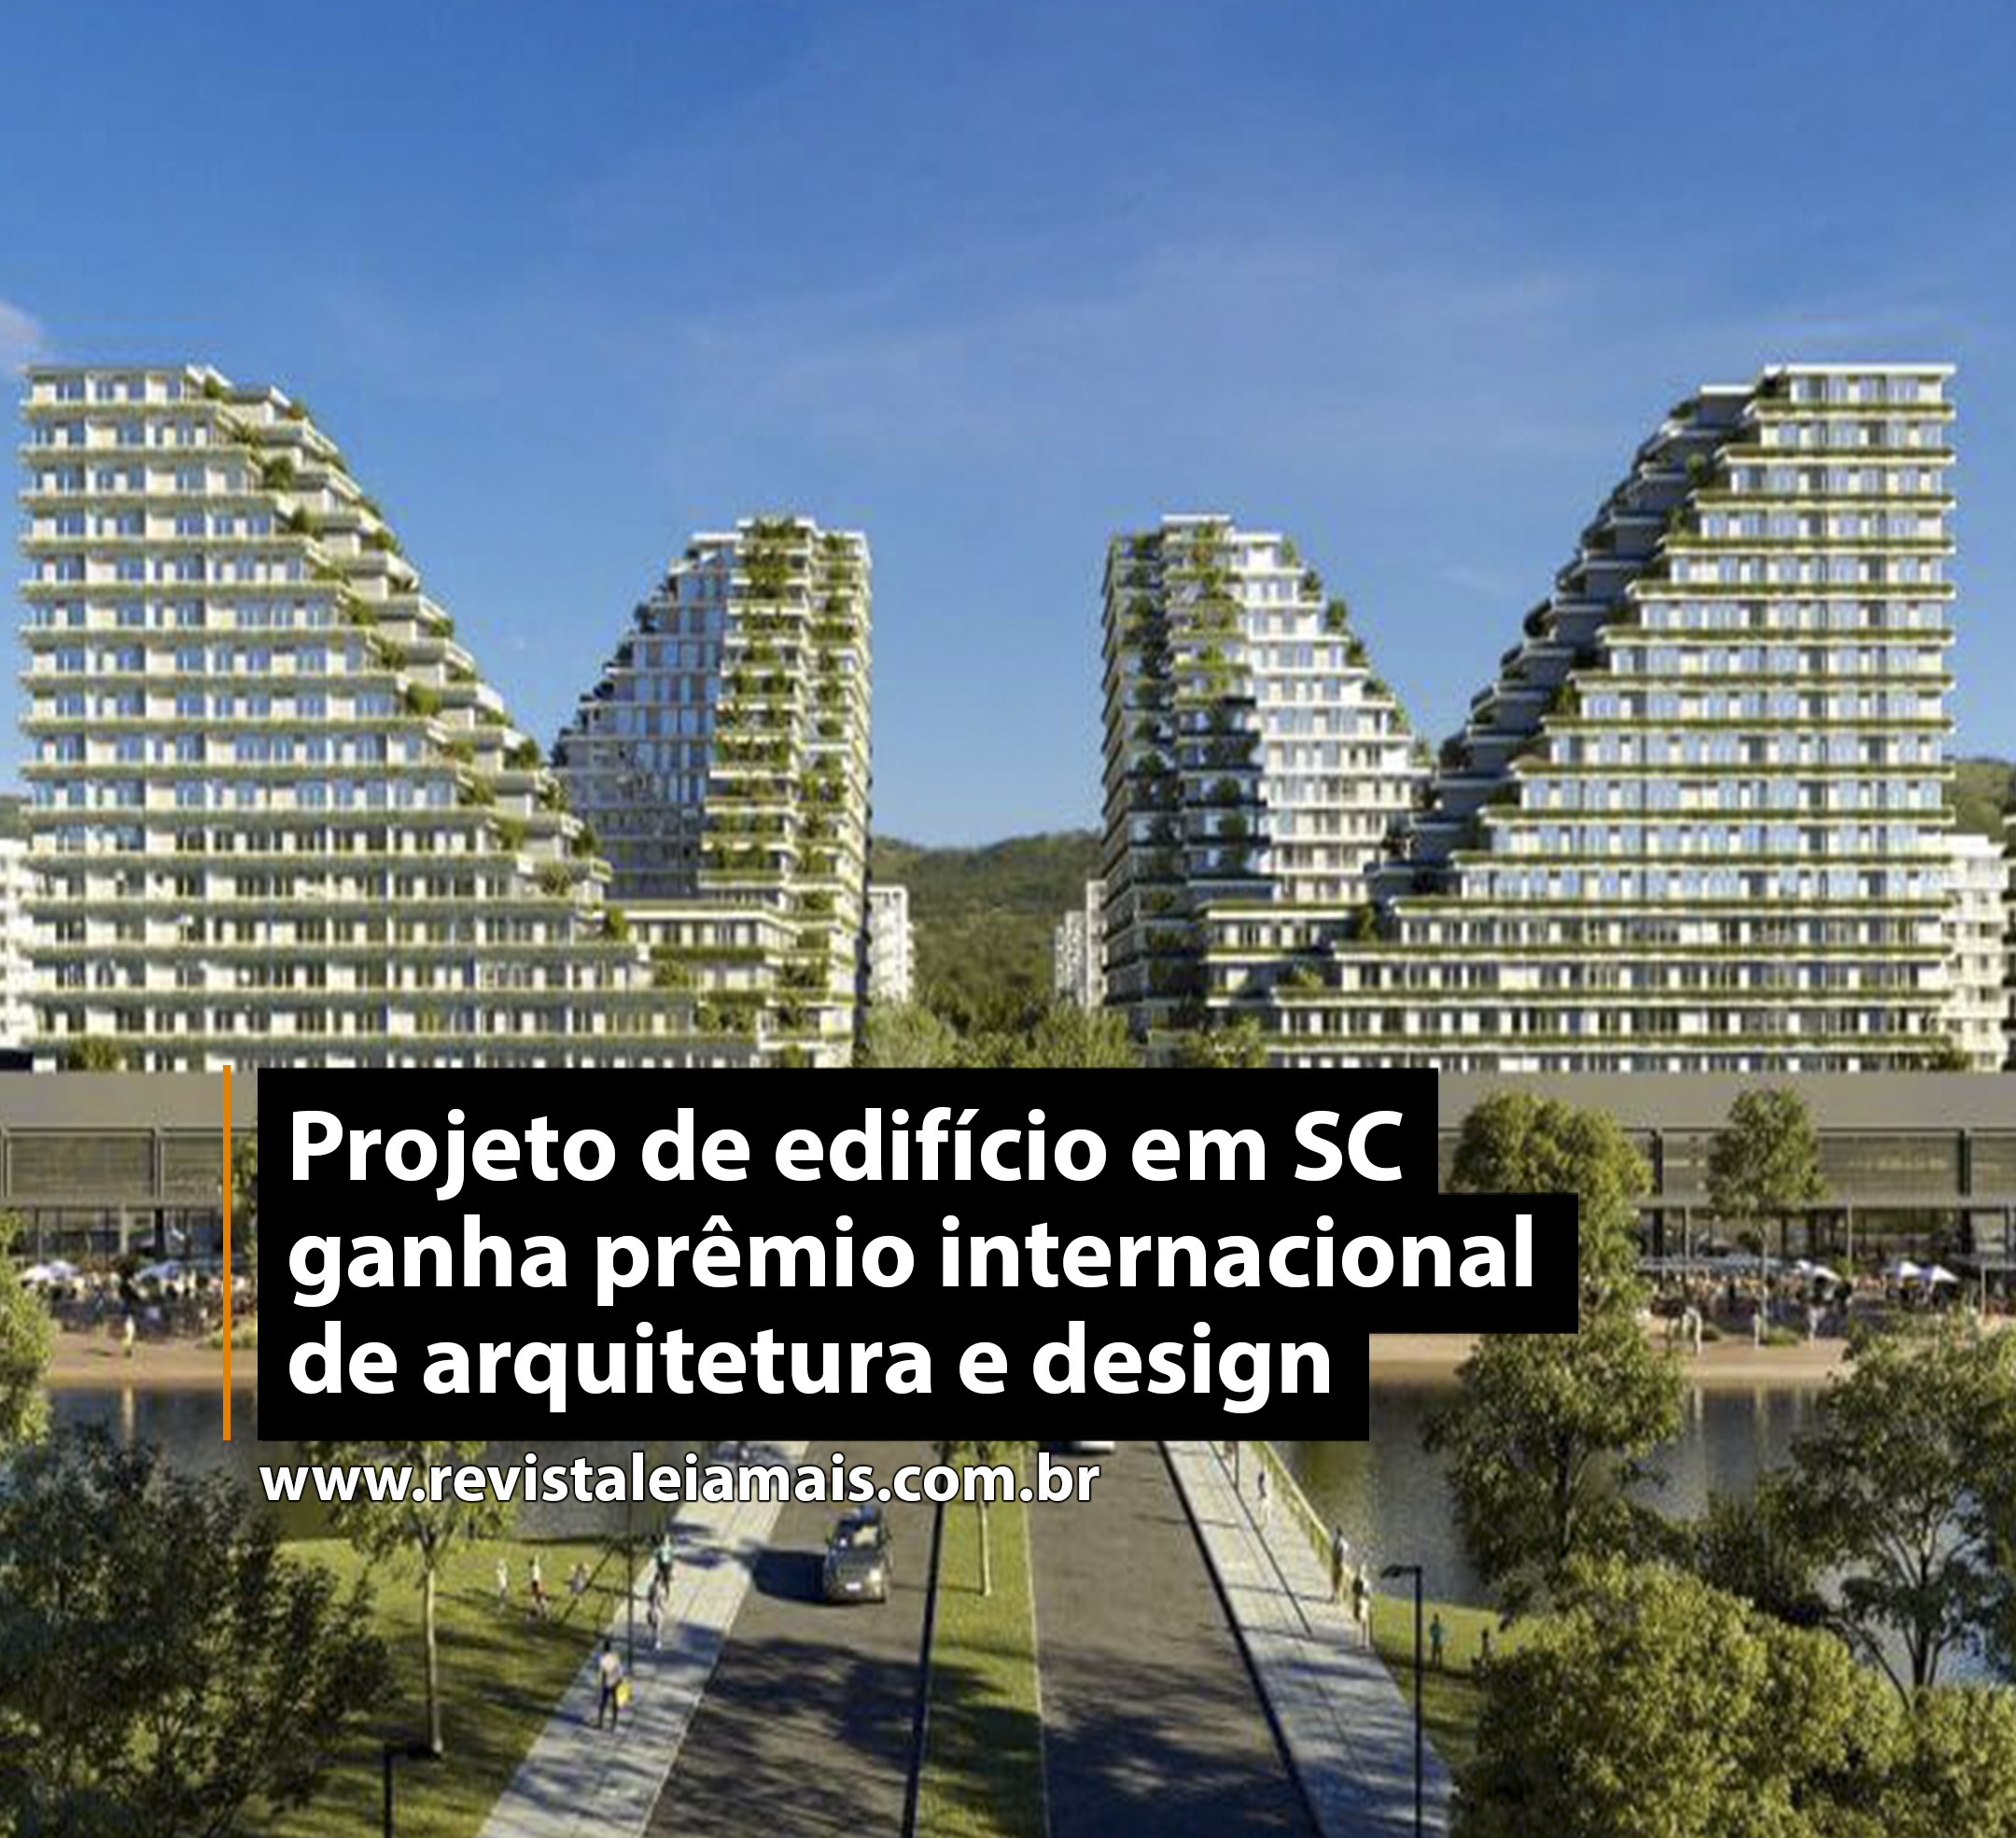 Projeto de edifício em SC ganha prêmio internacional de arquitetura e design